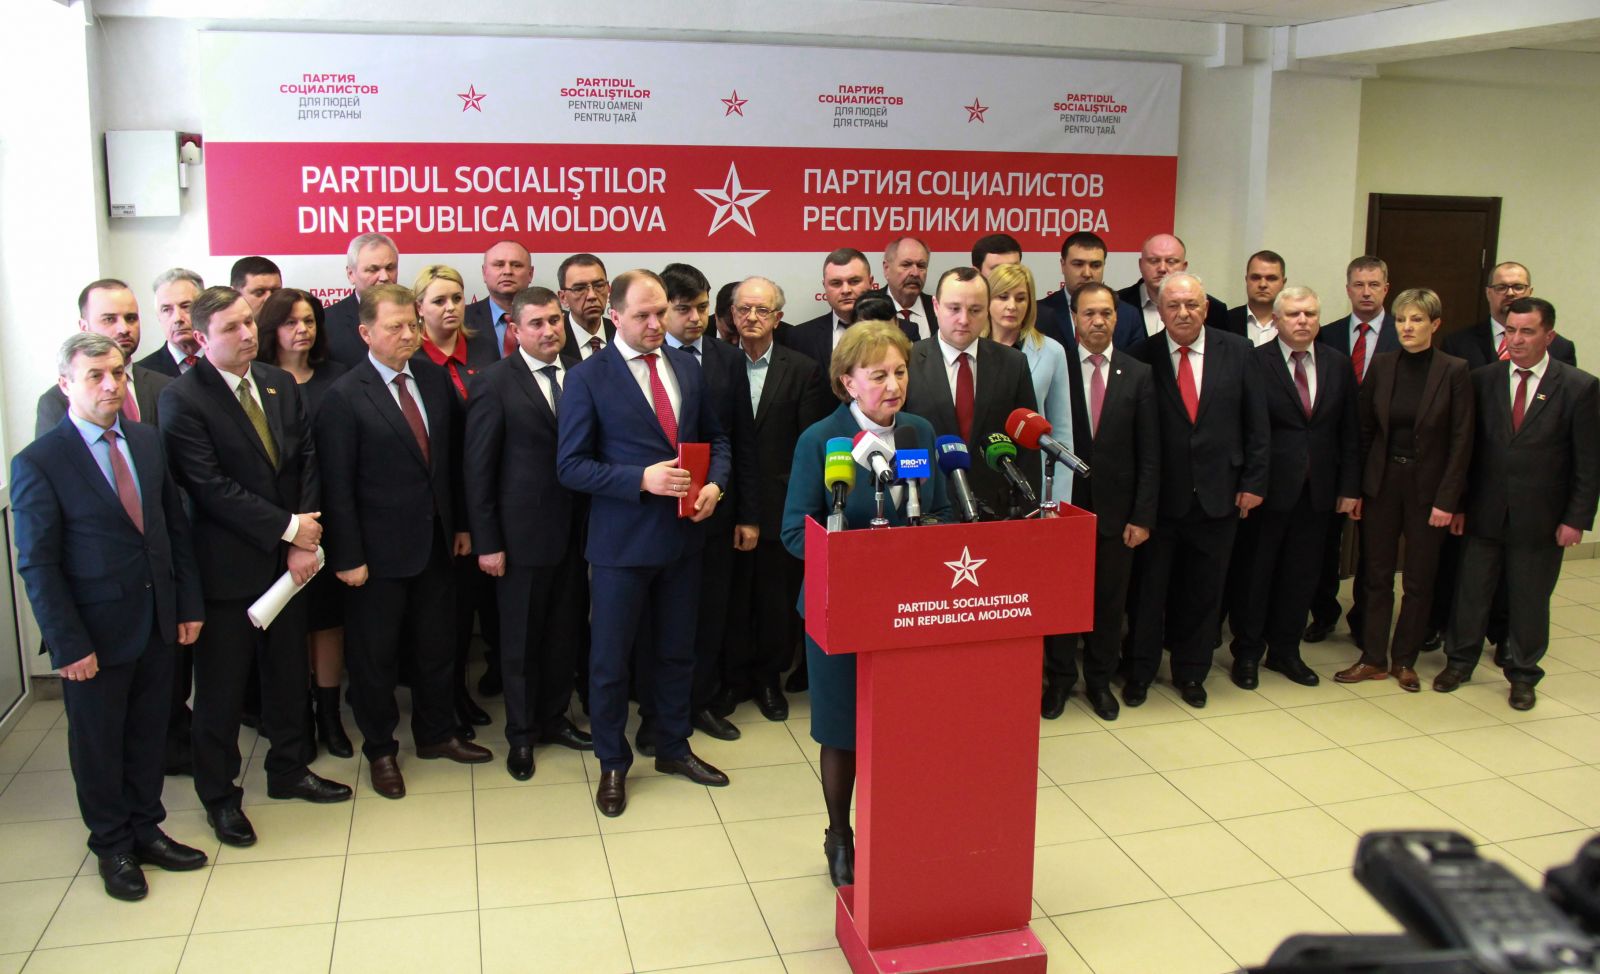 ULTIMĂ ORĂ! Socialiștii fac curățenie generală în partid! Mama lui Ion Ceban și alți membri, excluși din PSRM: Traseism politic și trădare”